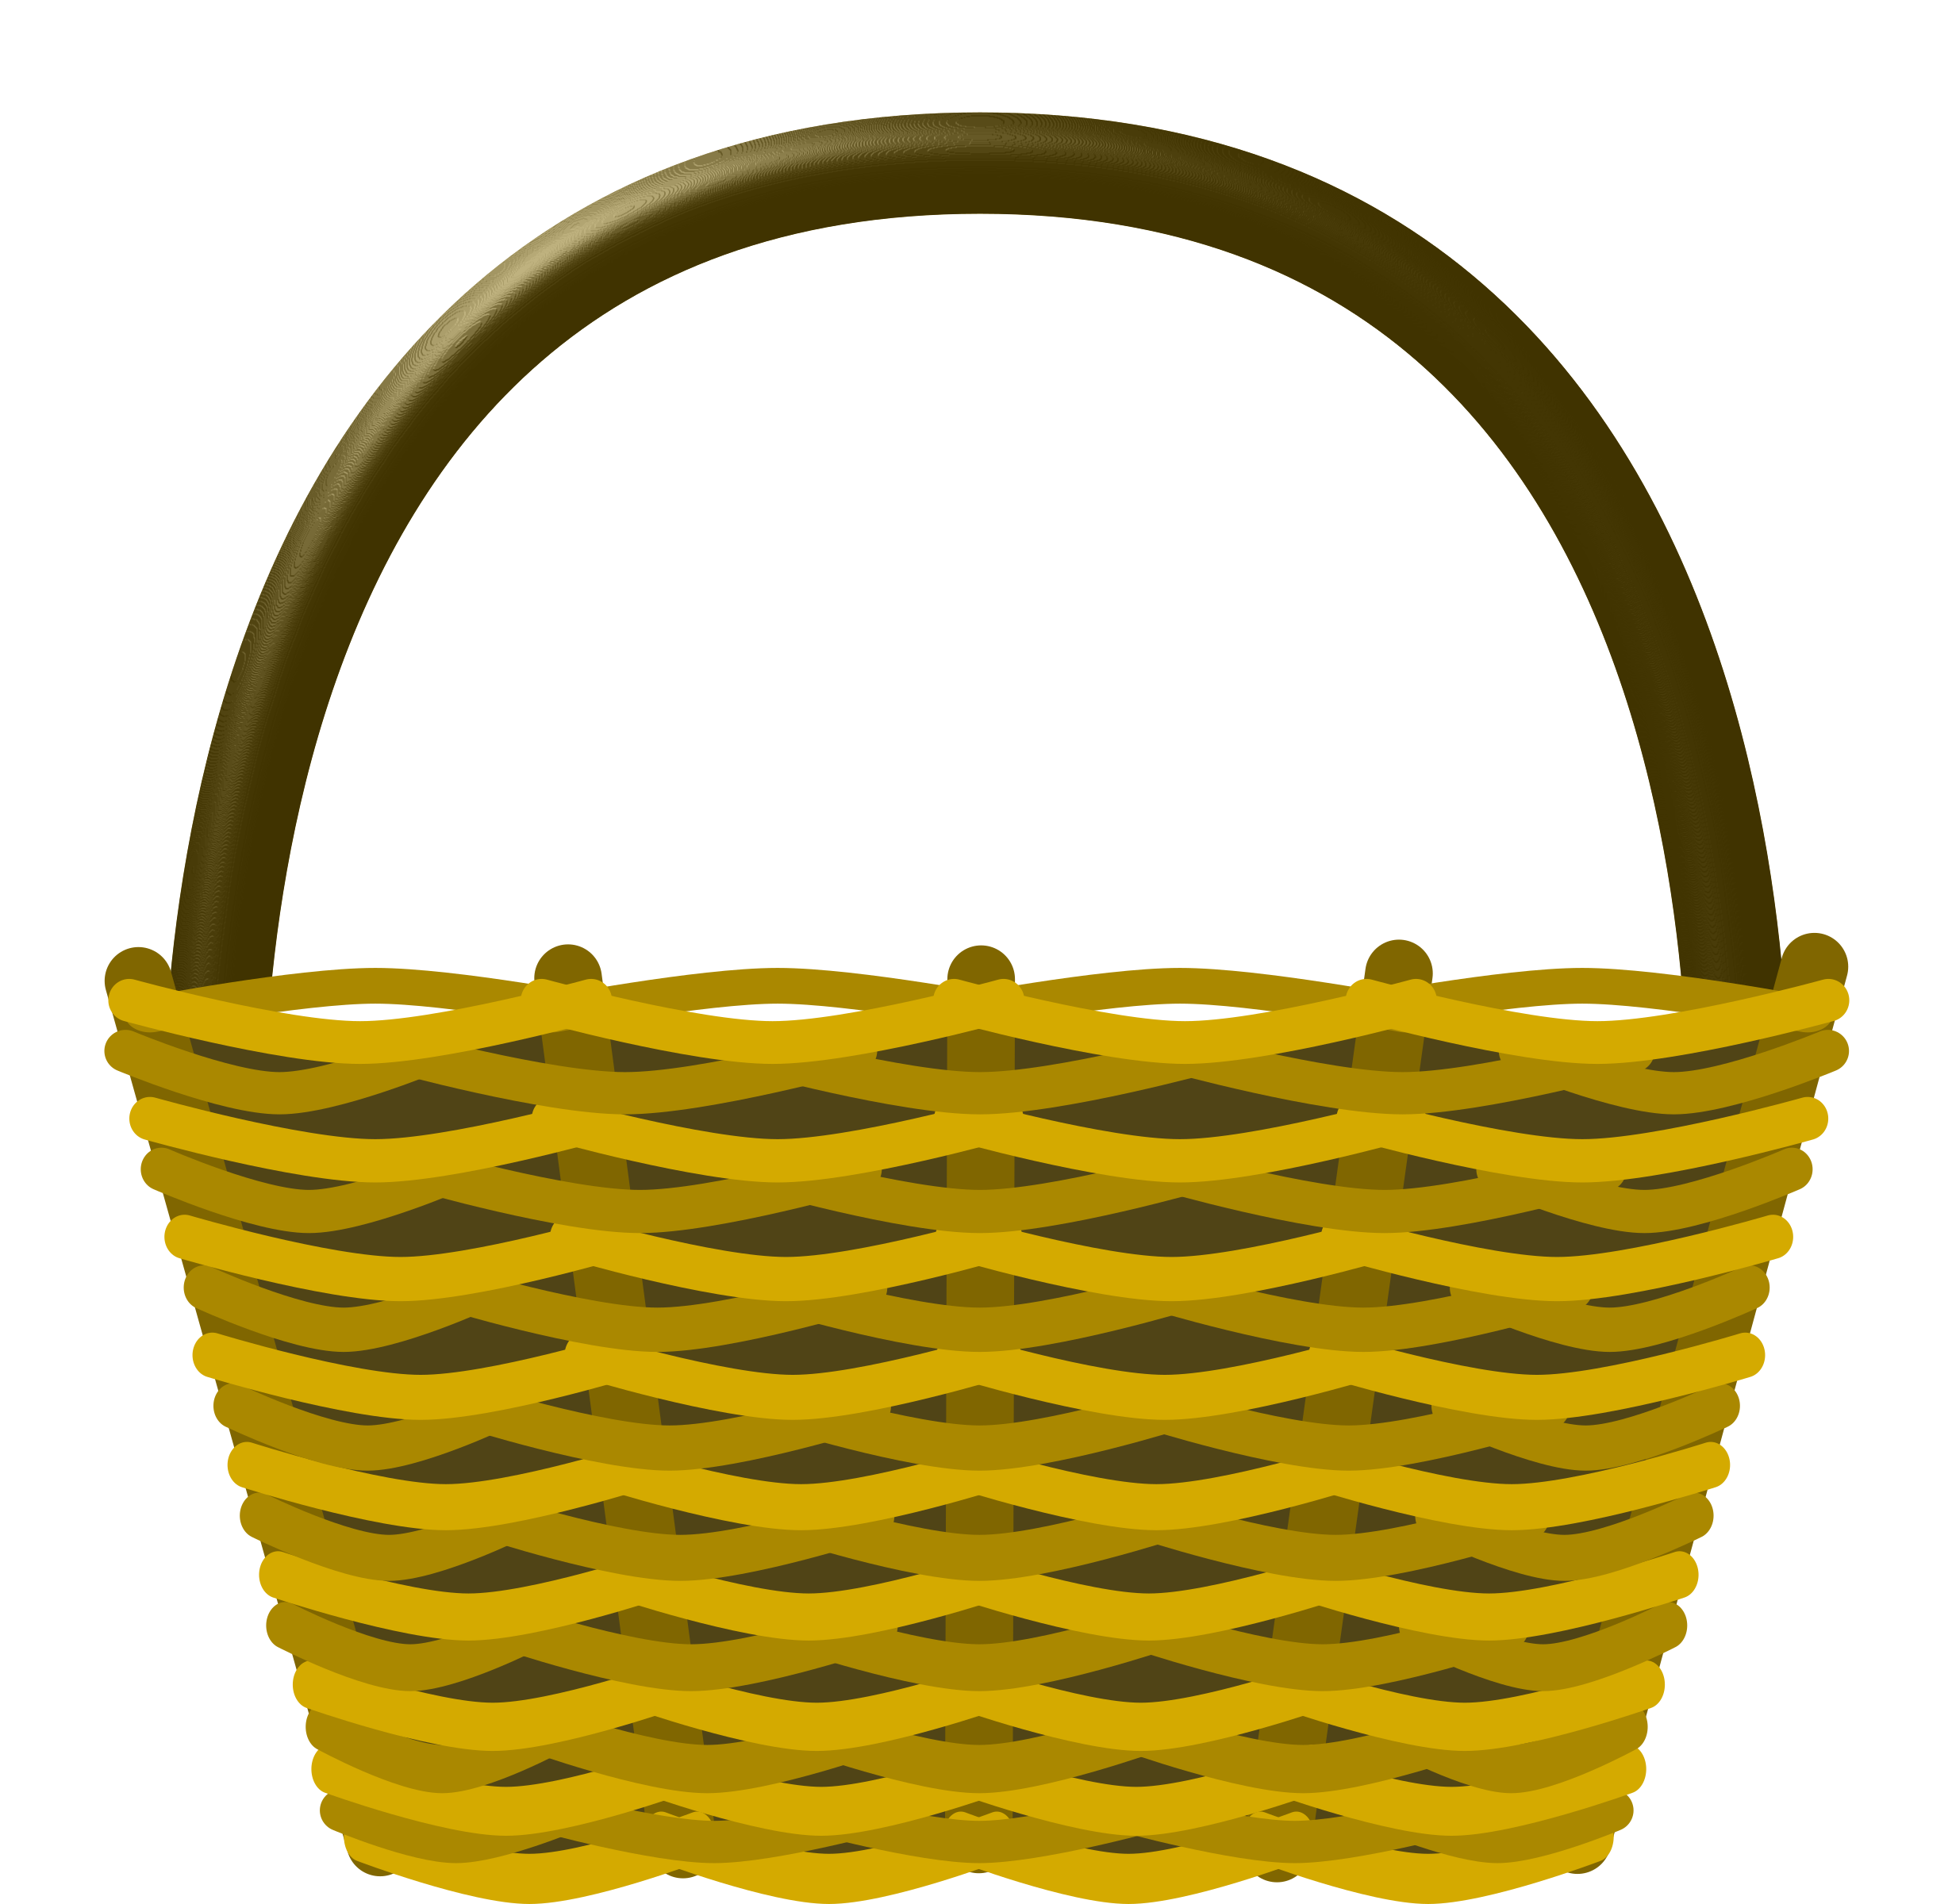 Empty Easter Basket Transparent Image PNG Image